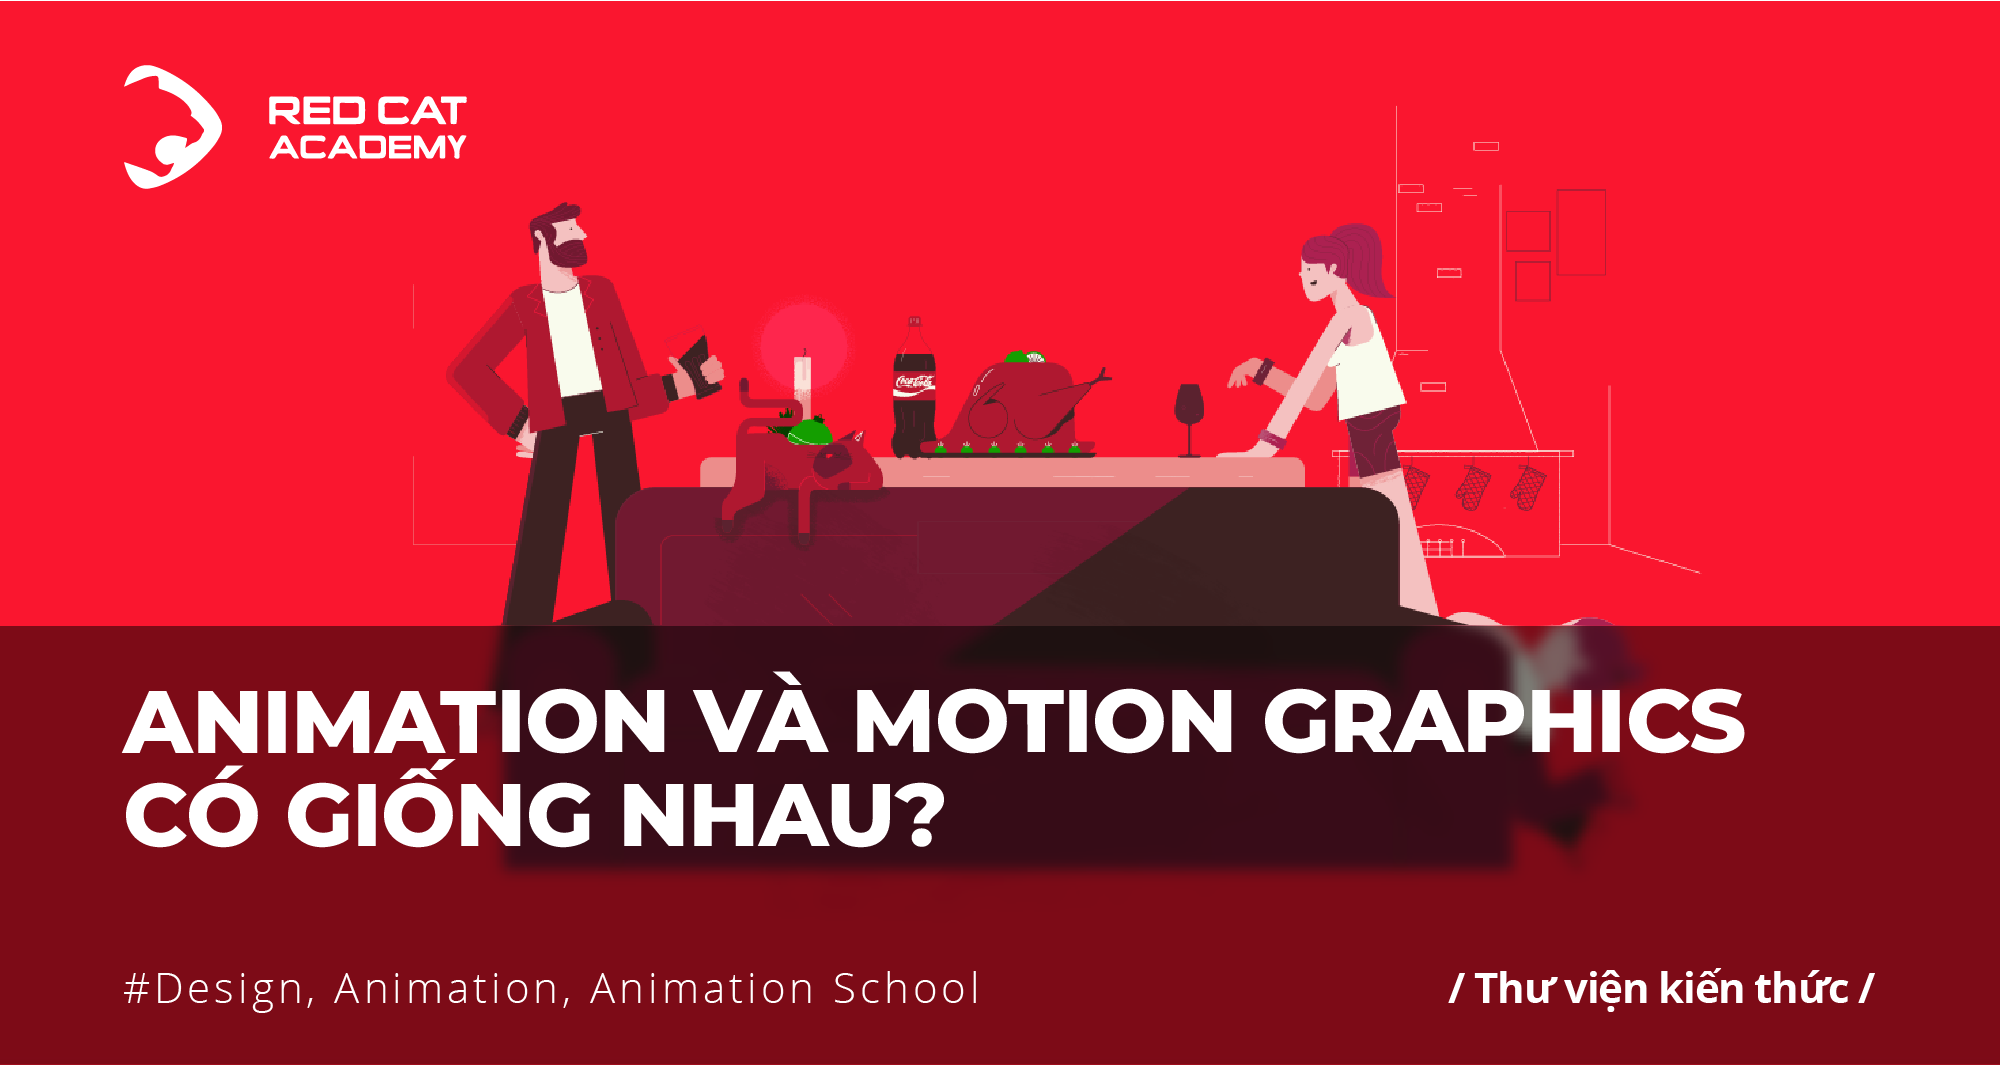 Animation và Motion Graphics có giống nhau? — Red Cat Academy